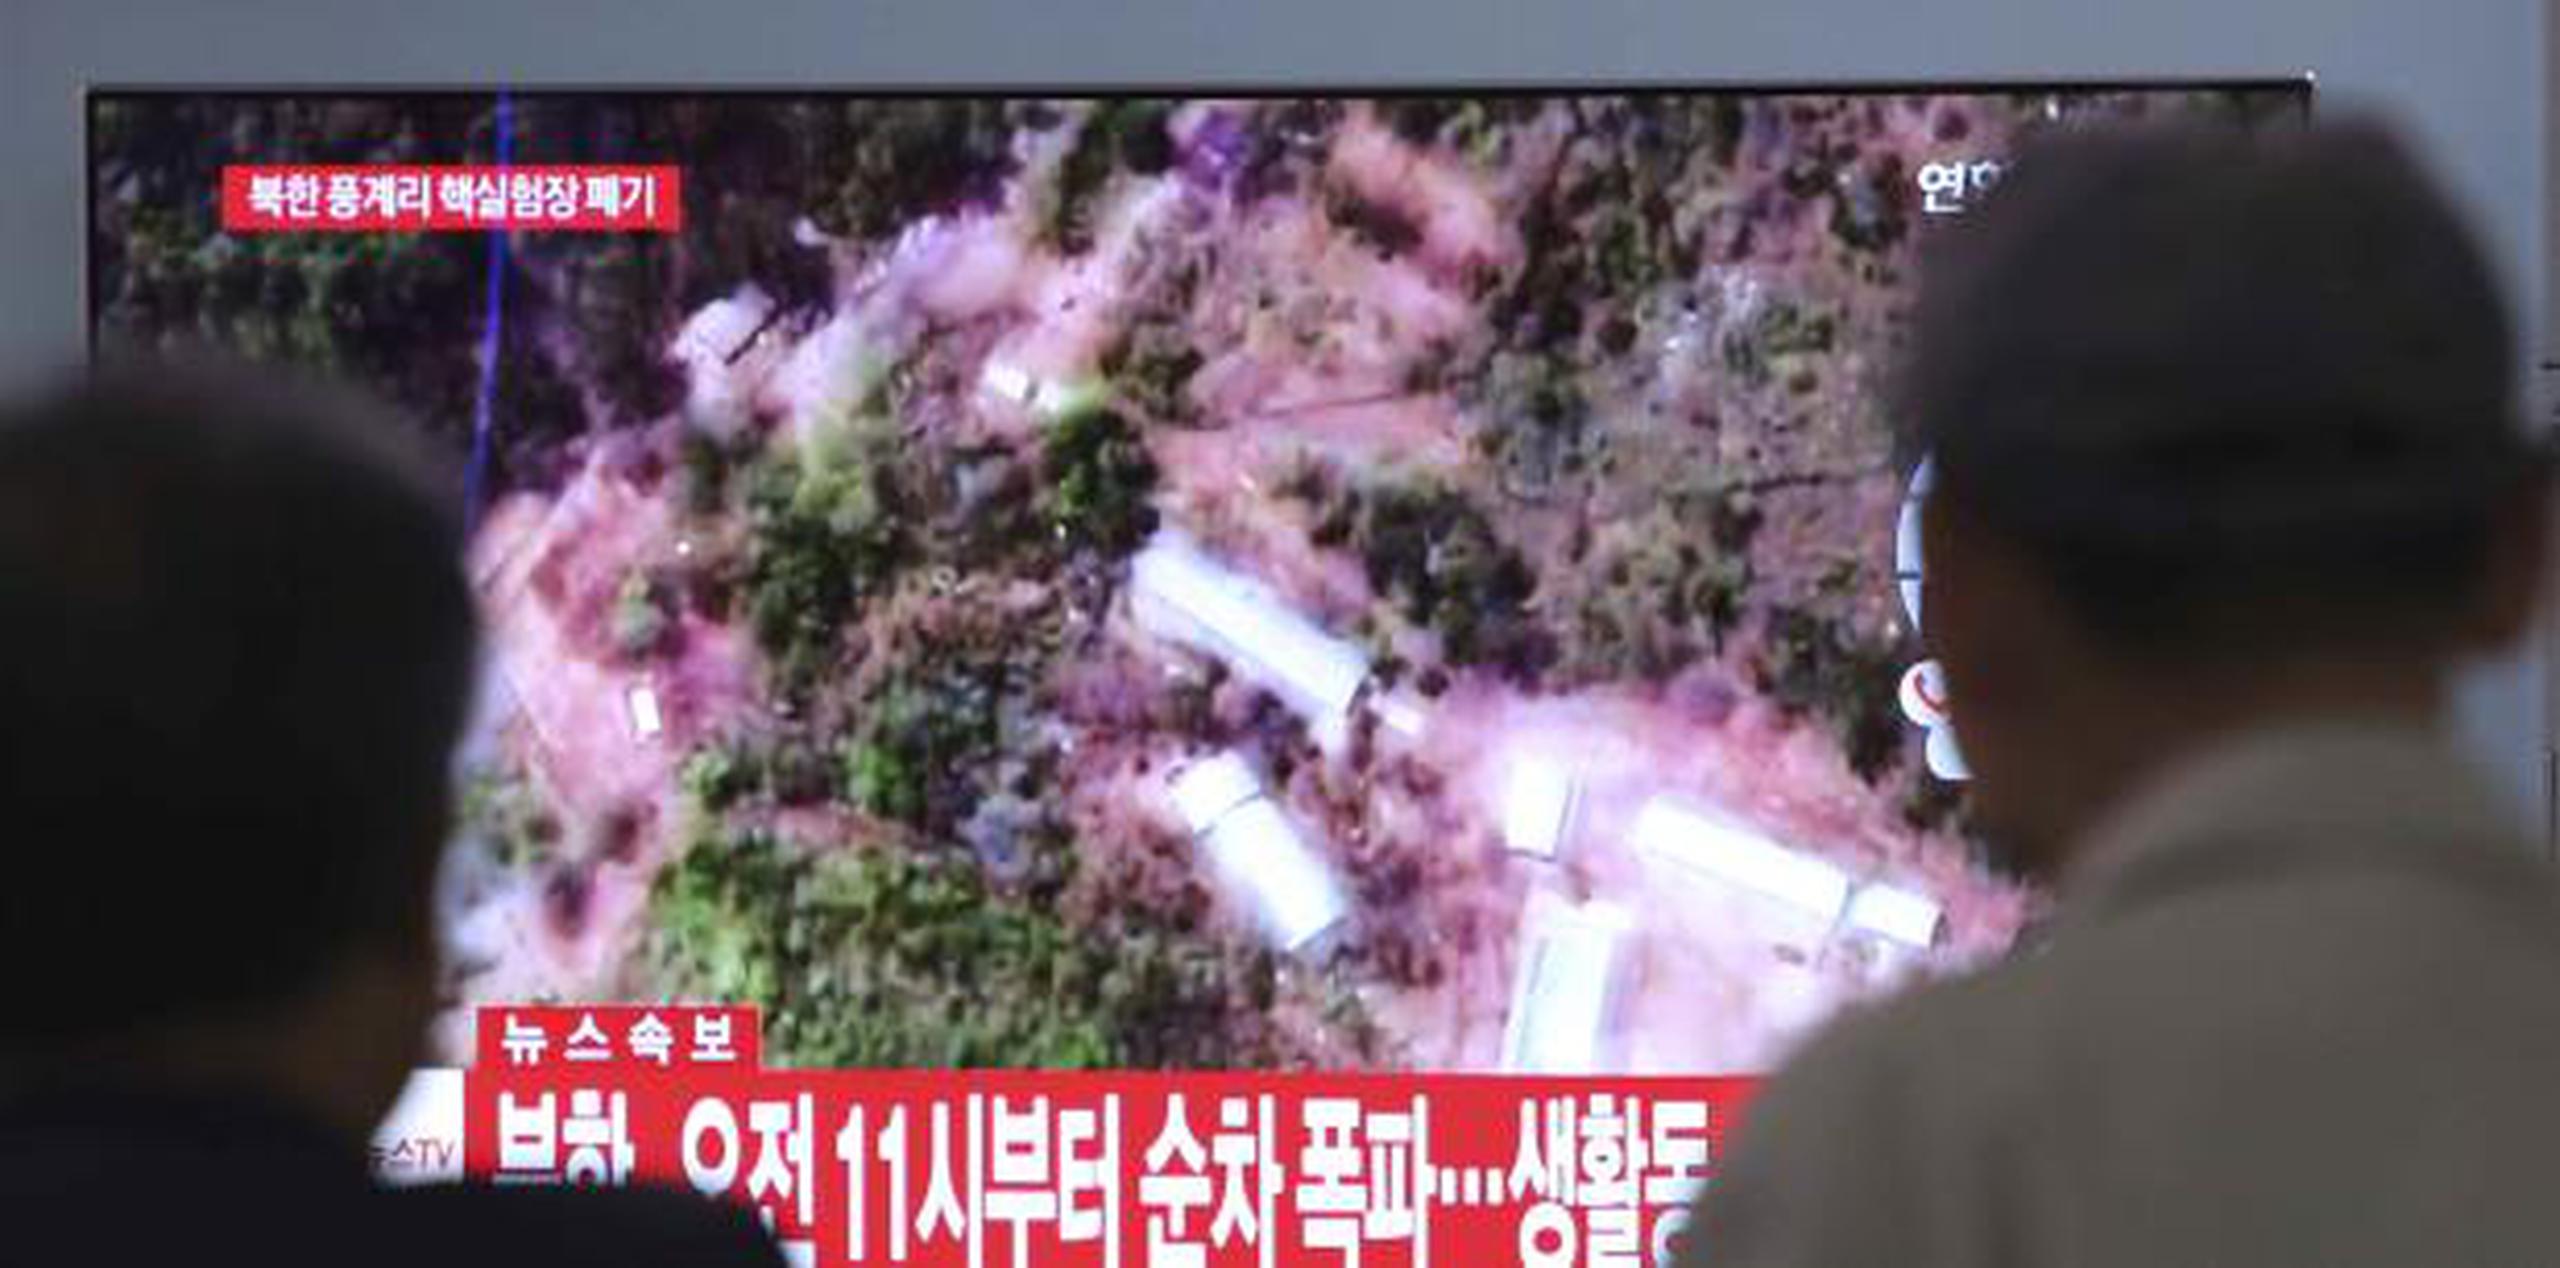 Norcorea amenaza con abandonar cumbre por palabras de Pence en momentos en que desmantela un sitio para pruebas nucleares, proceso que es seguido con interés por televidentes en Corea del Sur. (AP)

